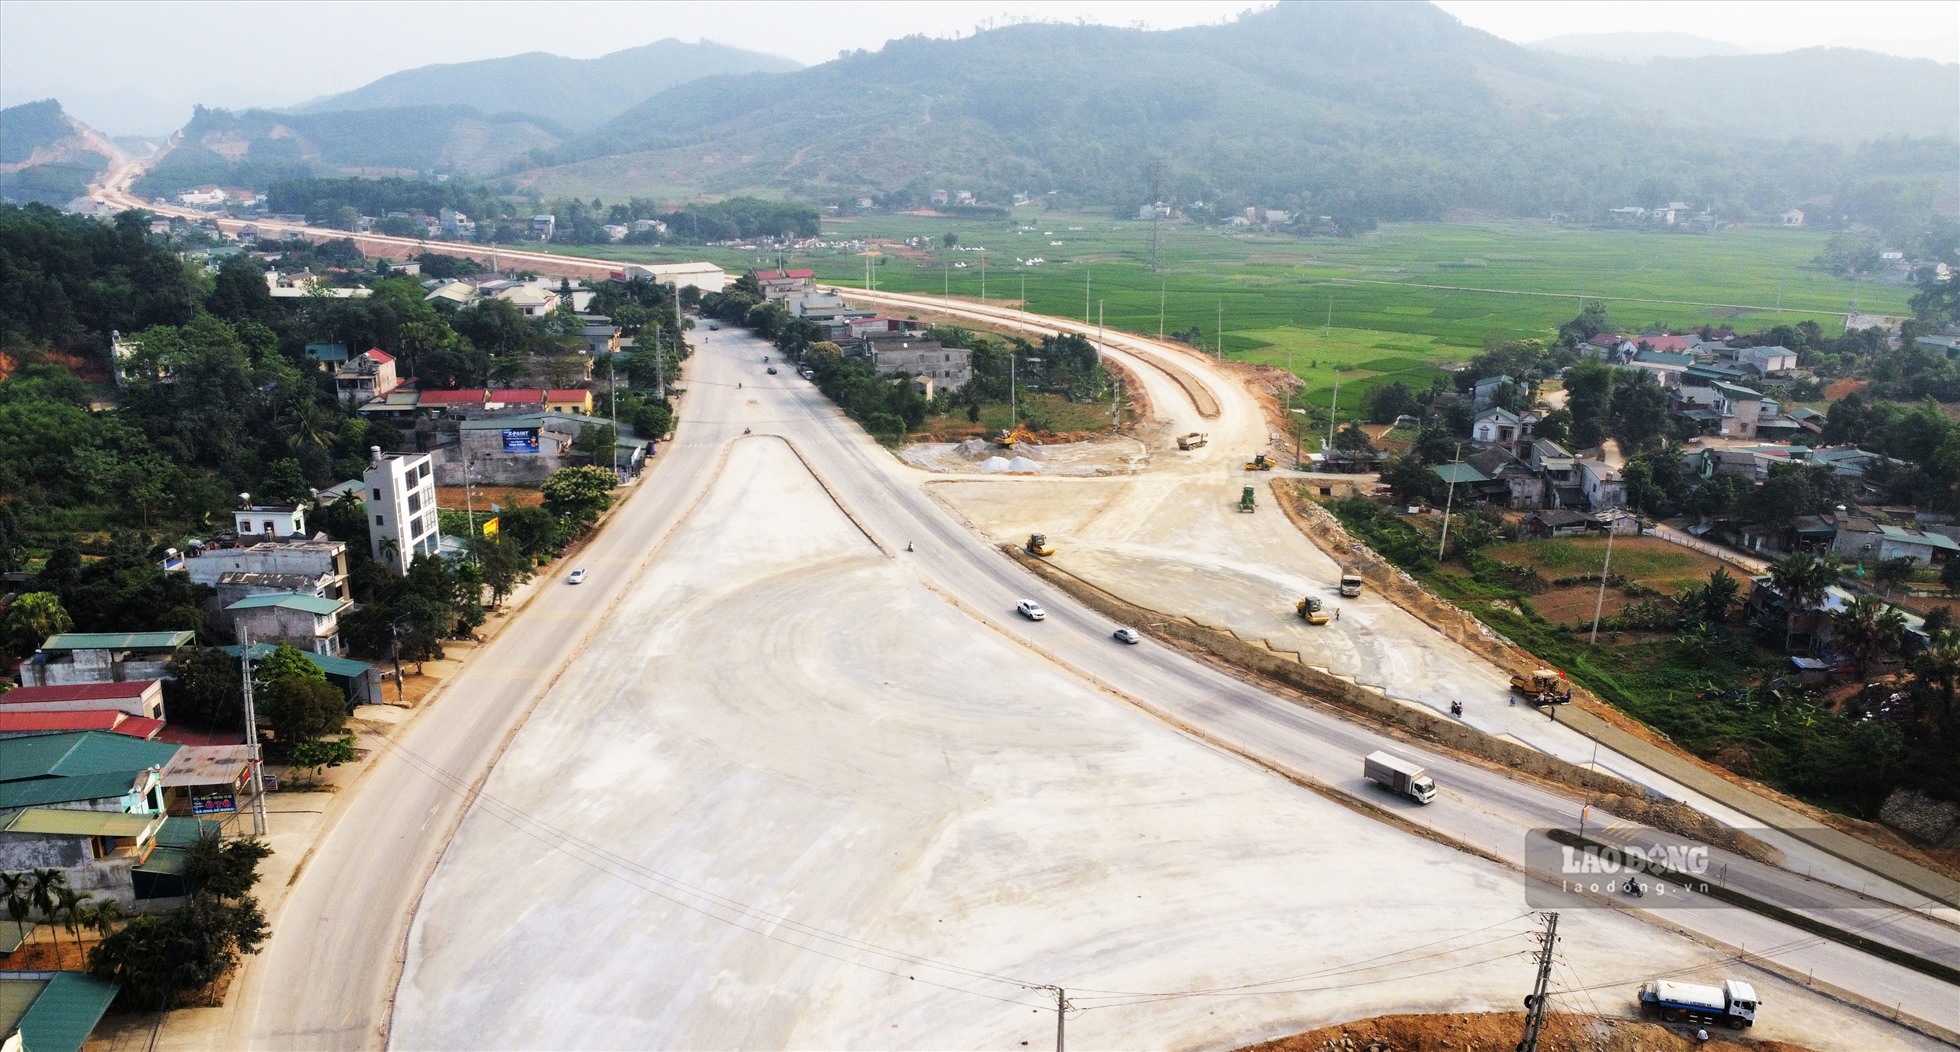 Điểm đầu dự án Cao tốc Tuyên Quang - Phú Thọ kết nối với cao tốc Nội Bài - Lào Cai tại xã Lưỡng Vượng (TP Tuyên Quang) hiện đã hoàn thành việc trải đá base. Trên đoạn tuyến đi qua địa bàn tỉnh Tuyên Quang đã cơ bản hoàn thành phần việc đào đắp.